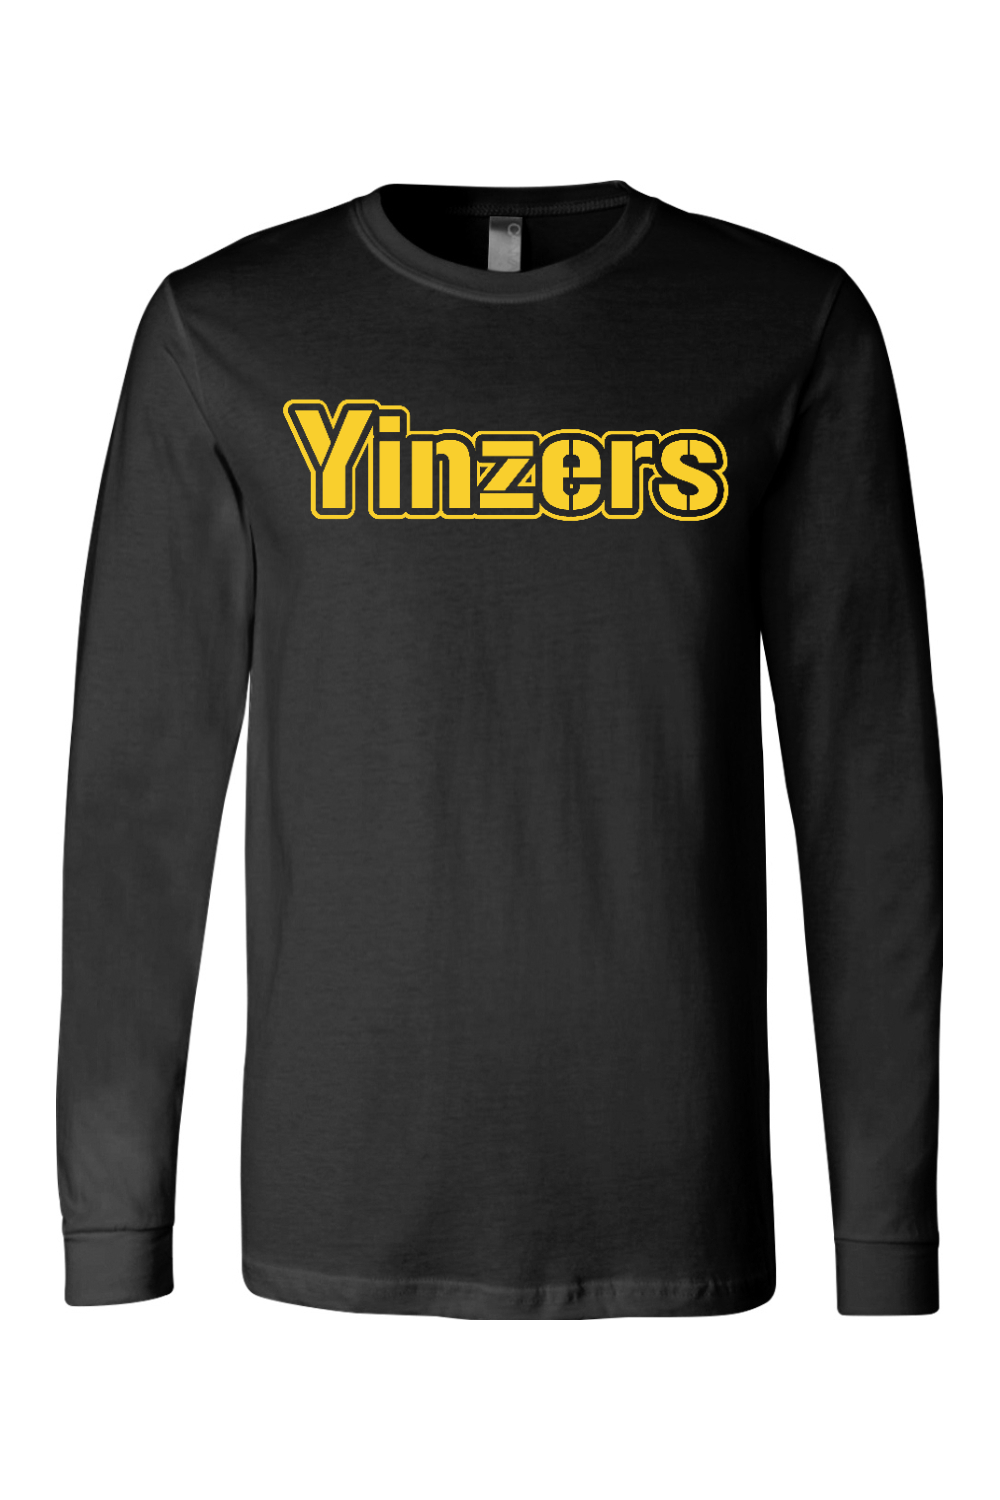 Yinzers Steel - Long Sleeve Tee - Yinzylvania